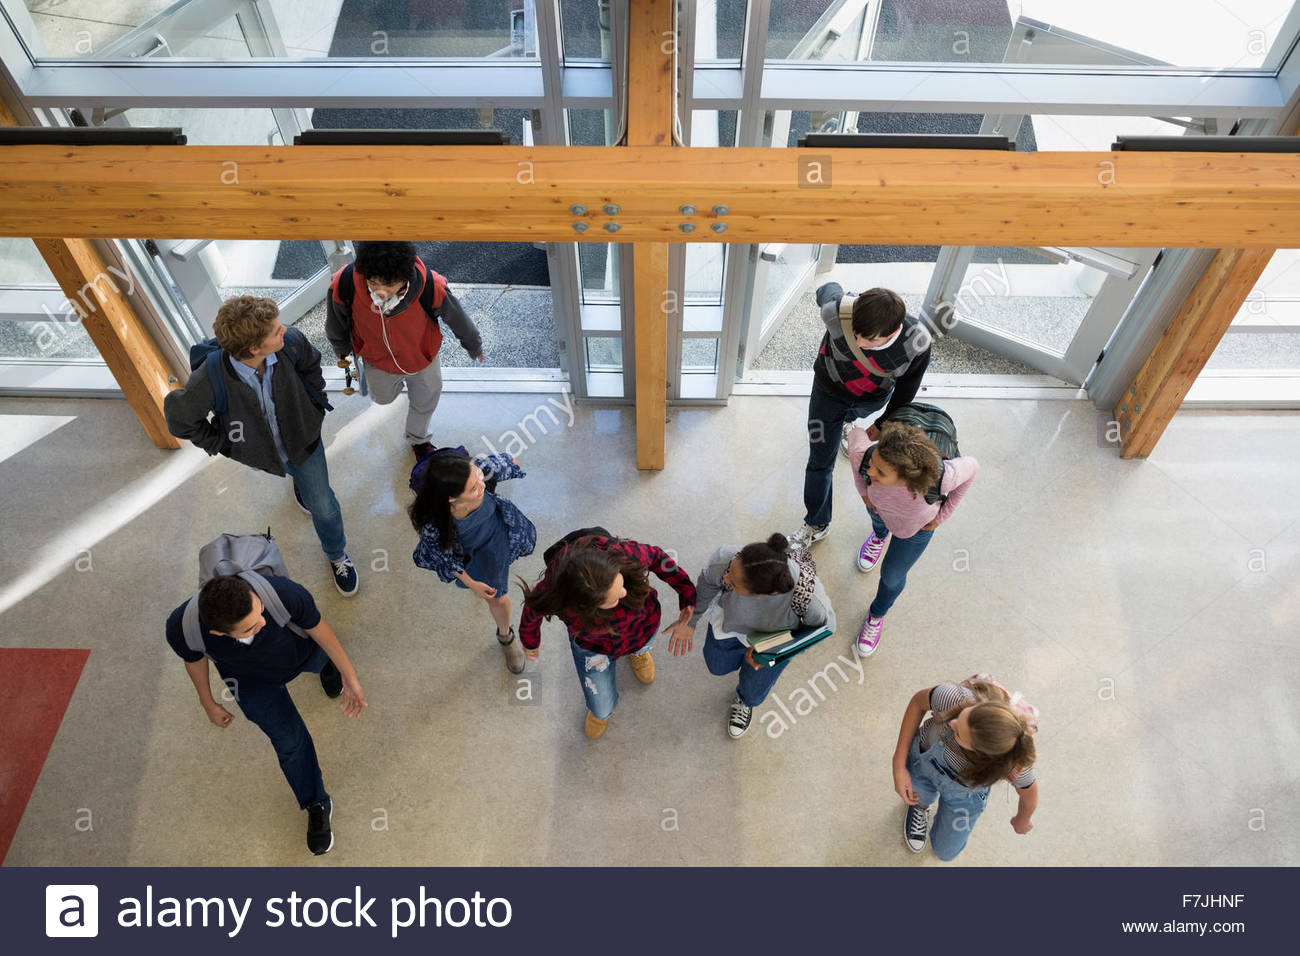 Overhead view high school students entering doors Stock Photo